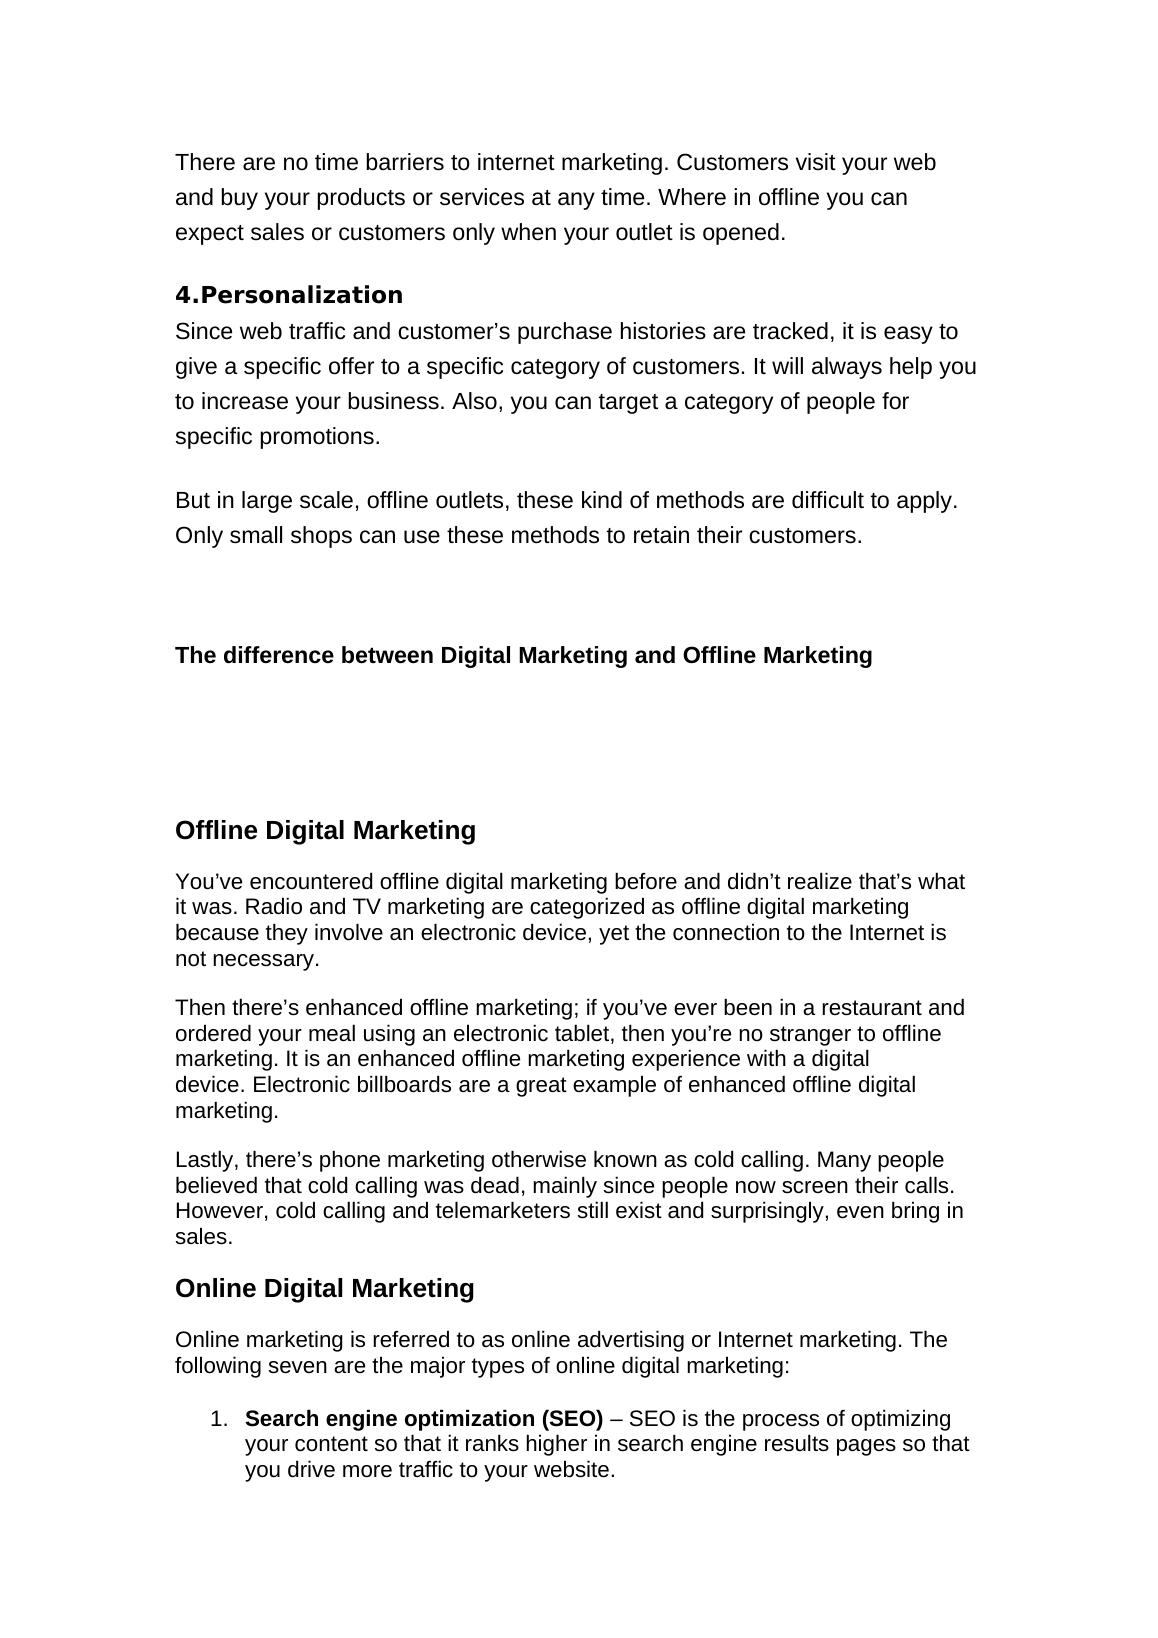 LO1 Digital Marketing - Doc_3